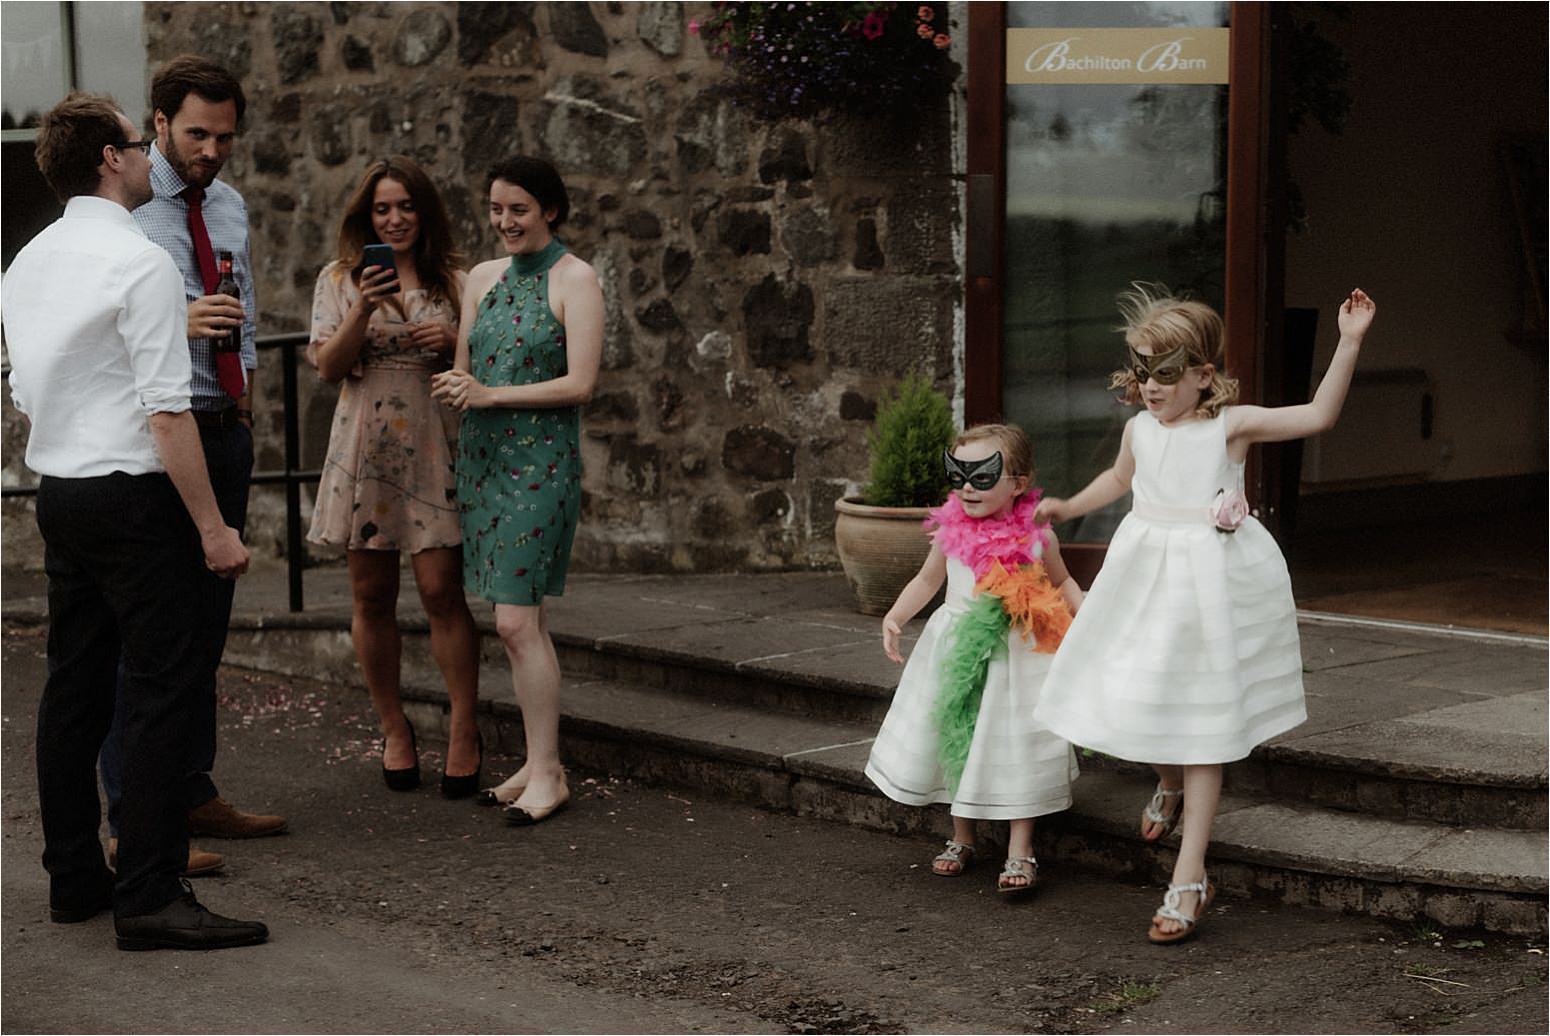 outdoor wedding in scotland at bachilton barn